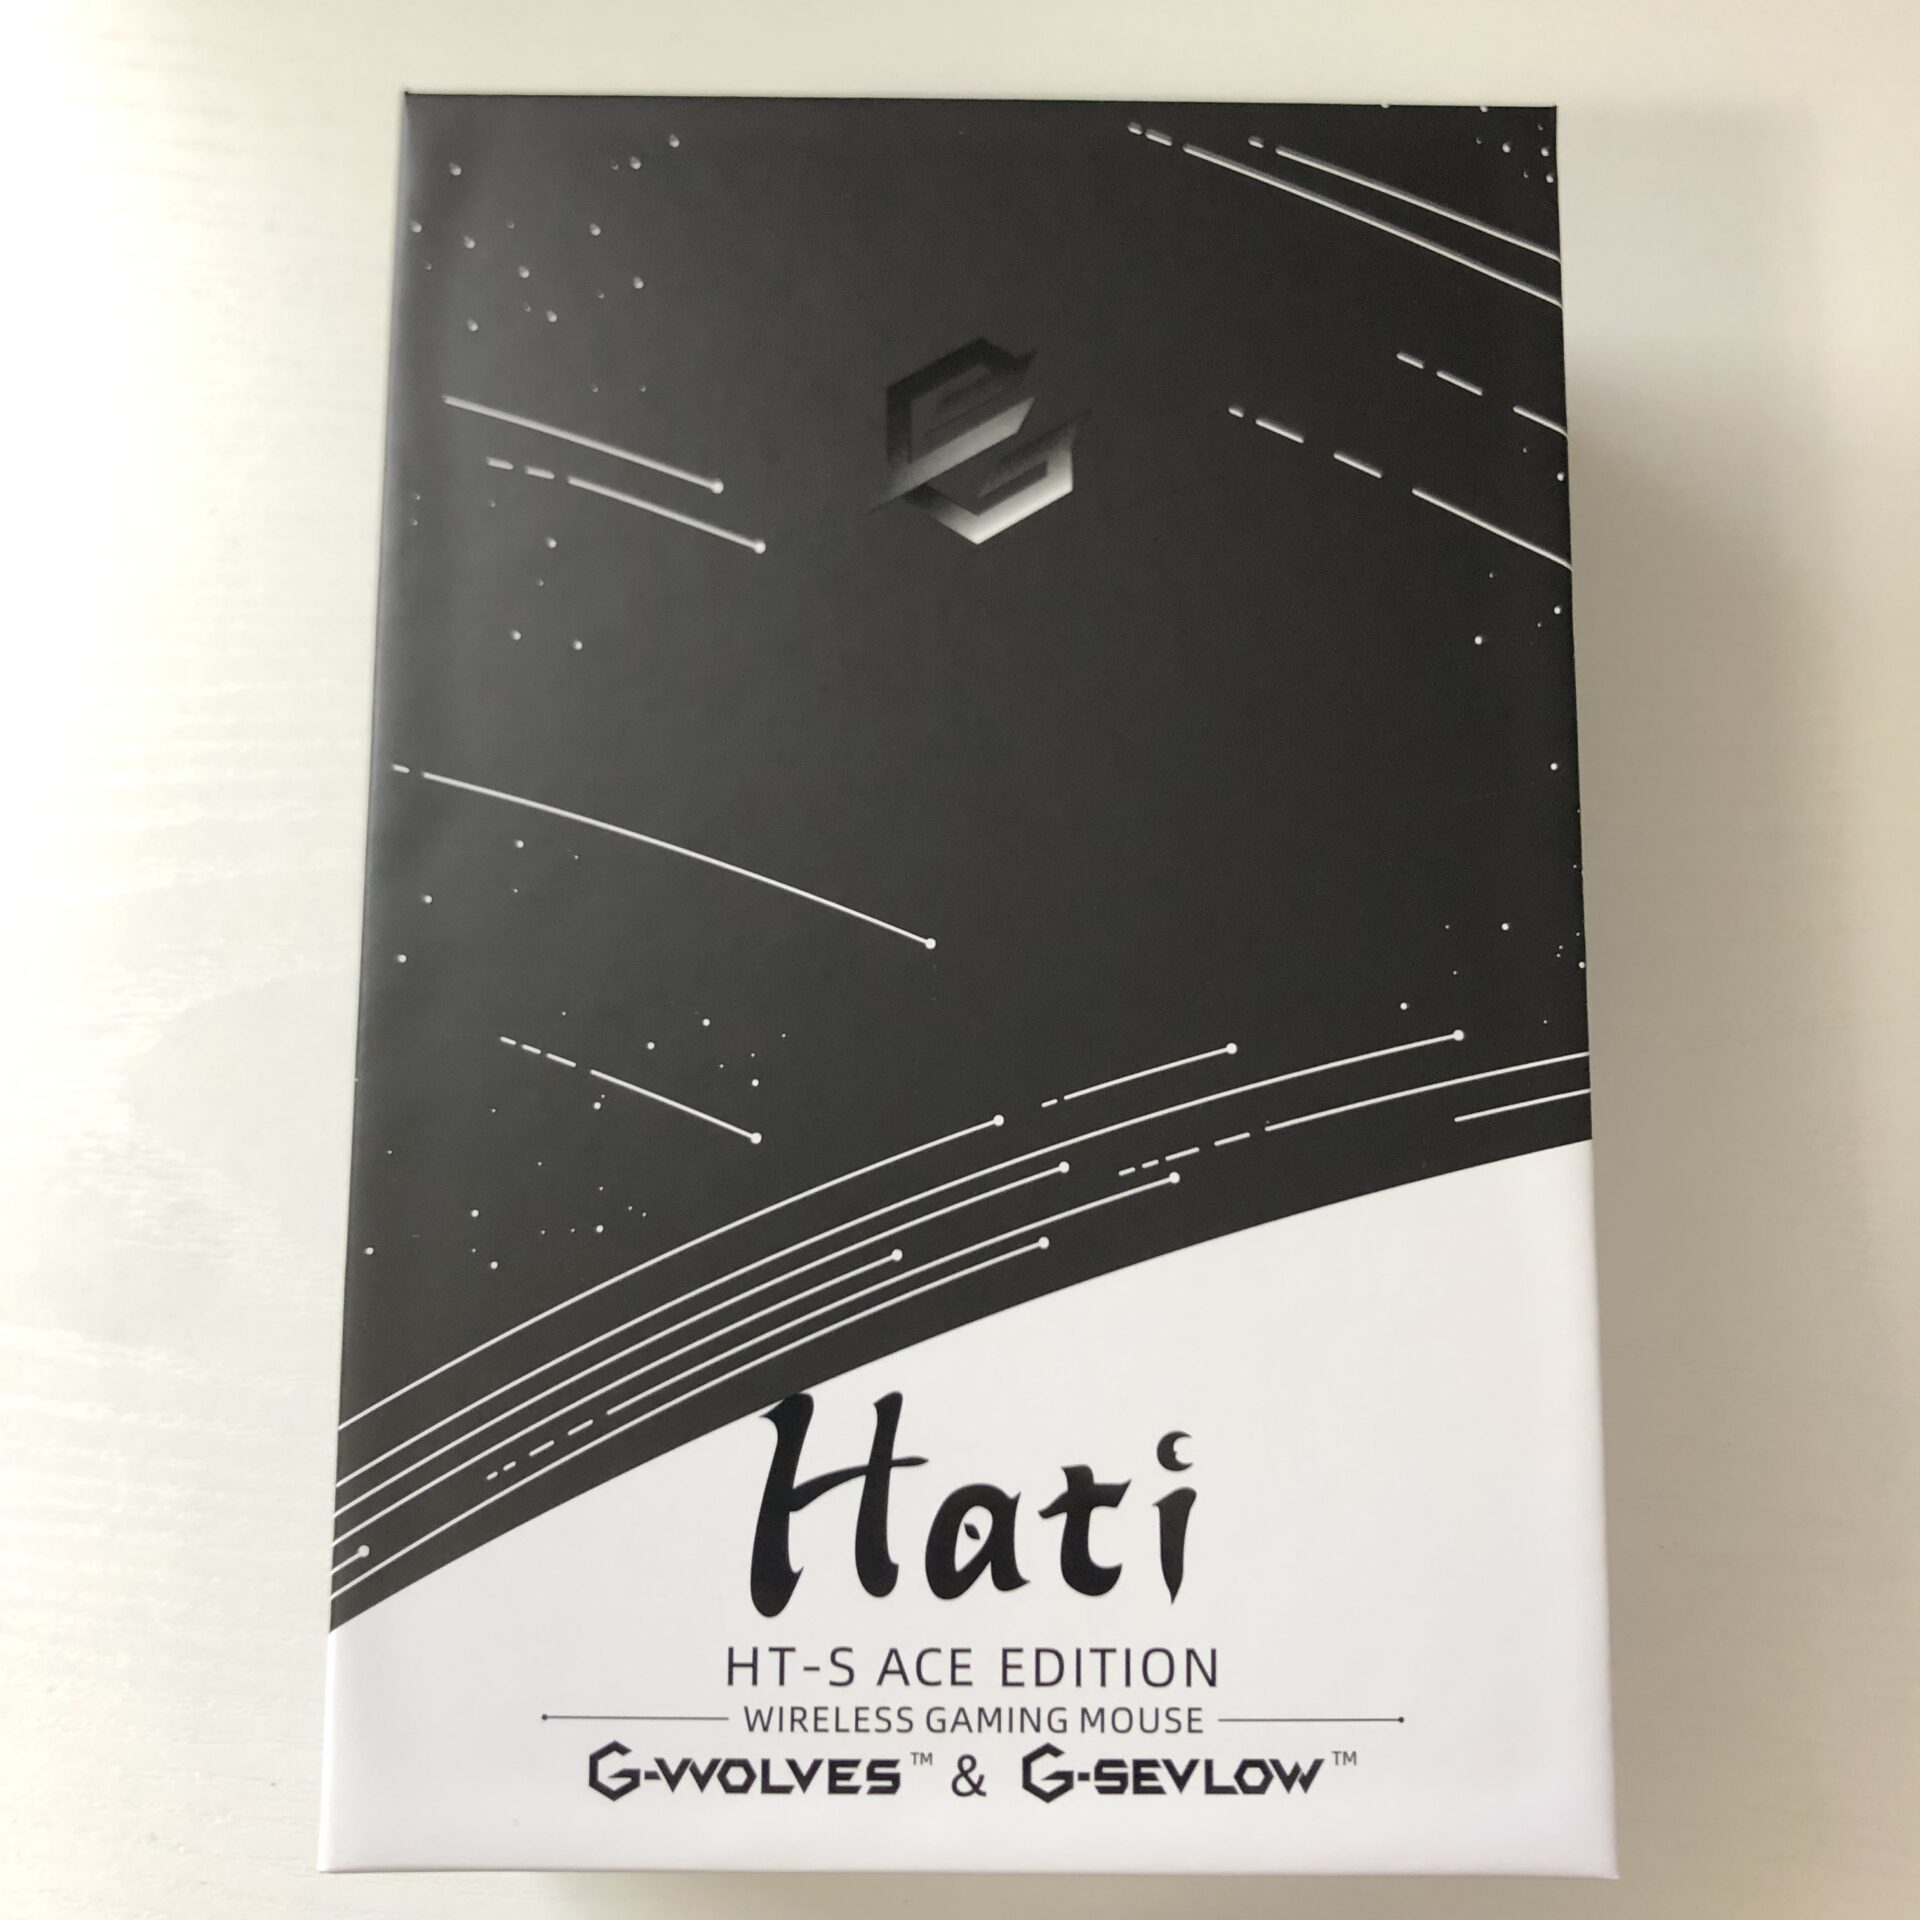 Hati-s package